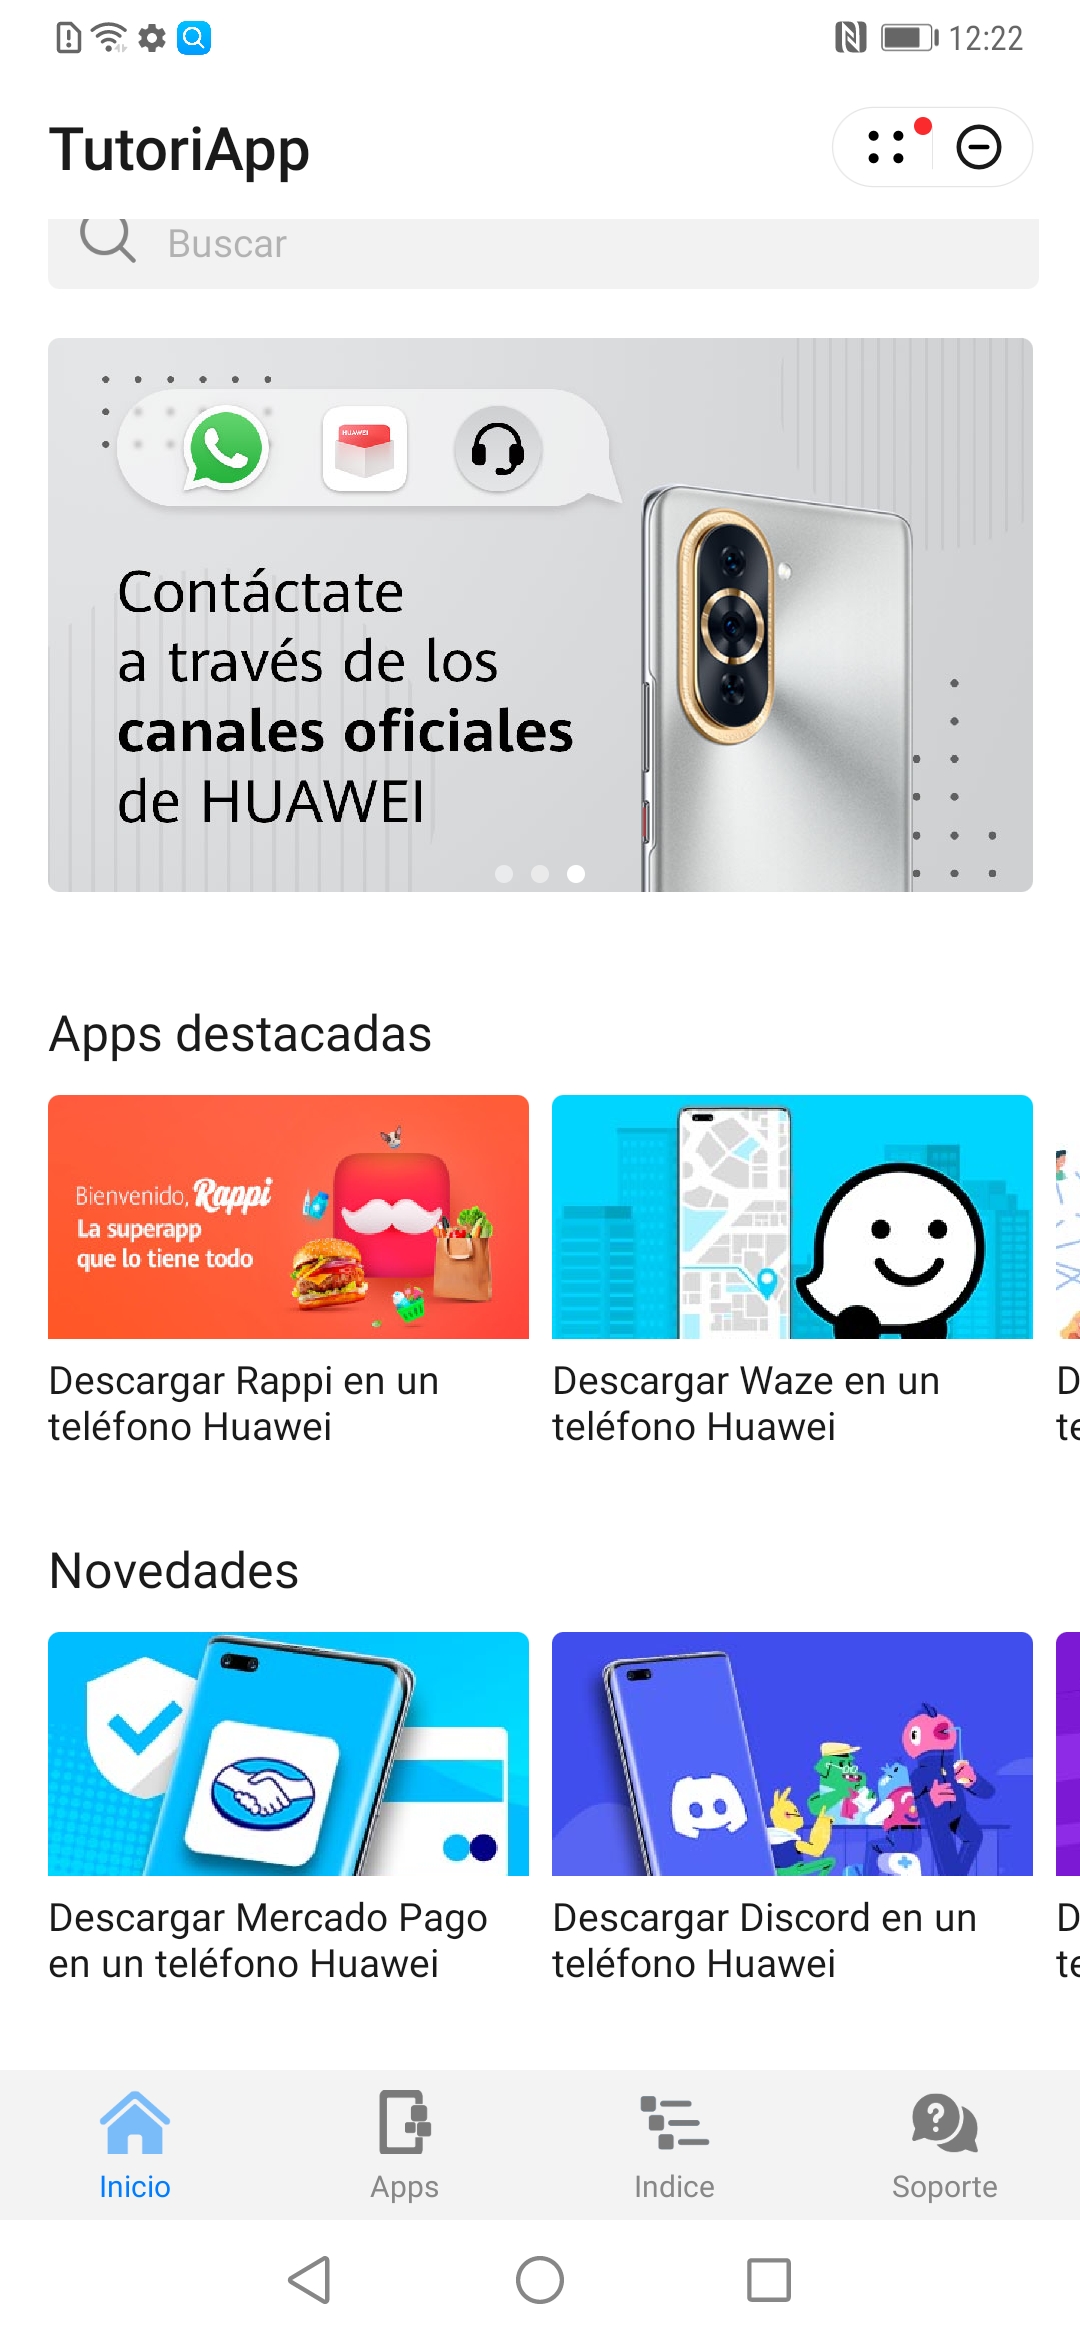 TutoriApp la nueva aplicación de Huawei